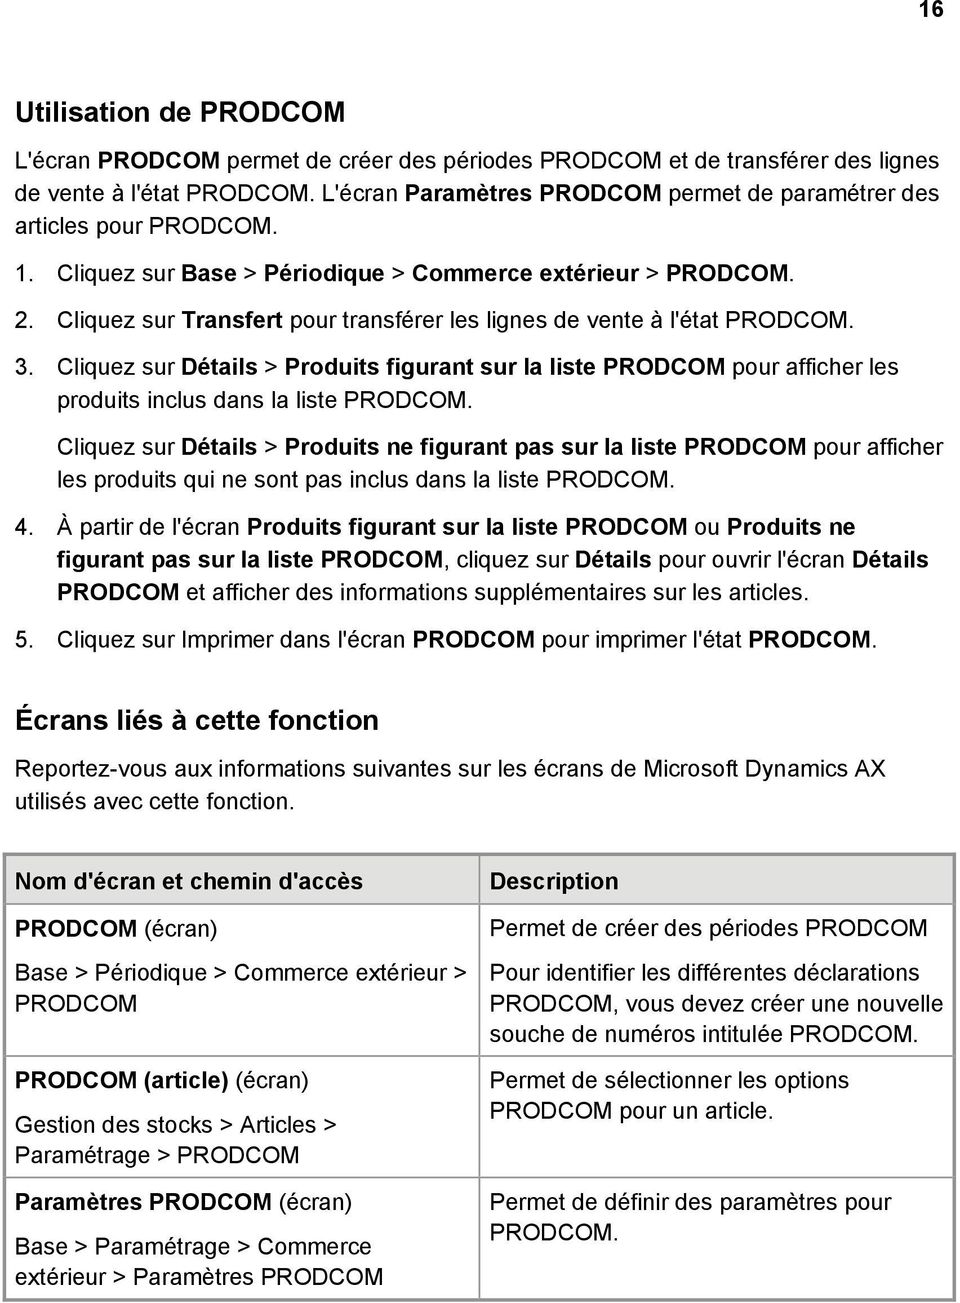 Cliquez sur Transfert pour transférer les lignes de vente à l'état PRODCOM. 3. Cliquez sur Détails > Produits figurant sur la liste PRODCOM pour afficher les produits inclus dans la liste PRODCOM.